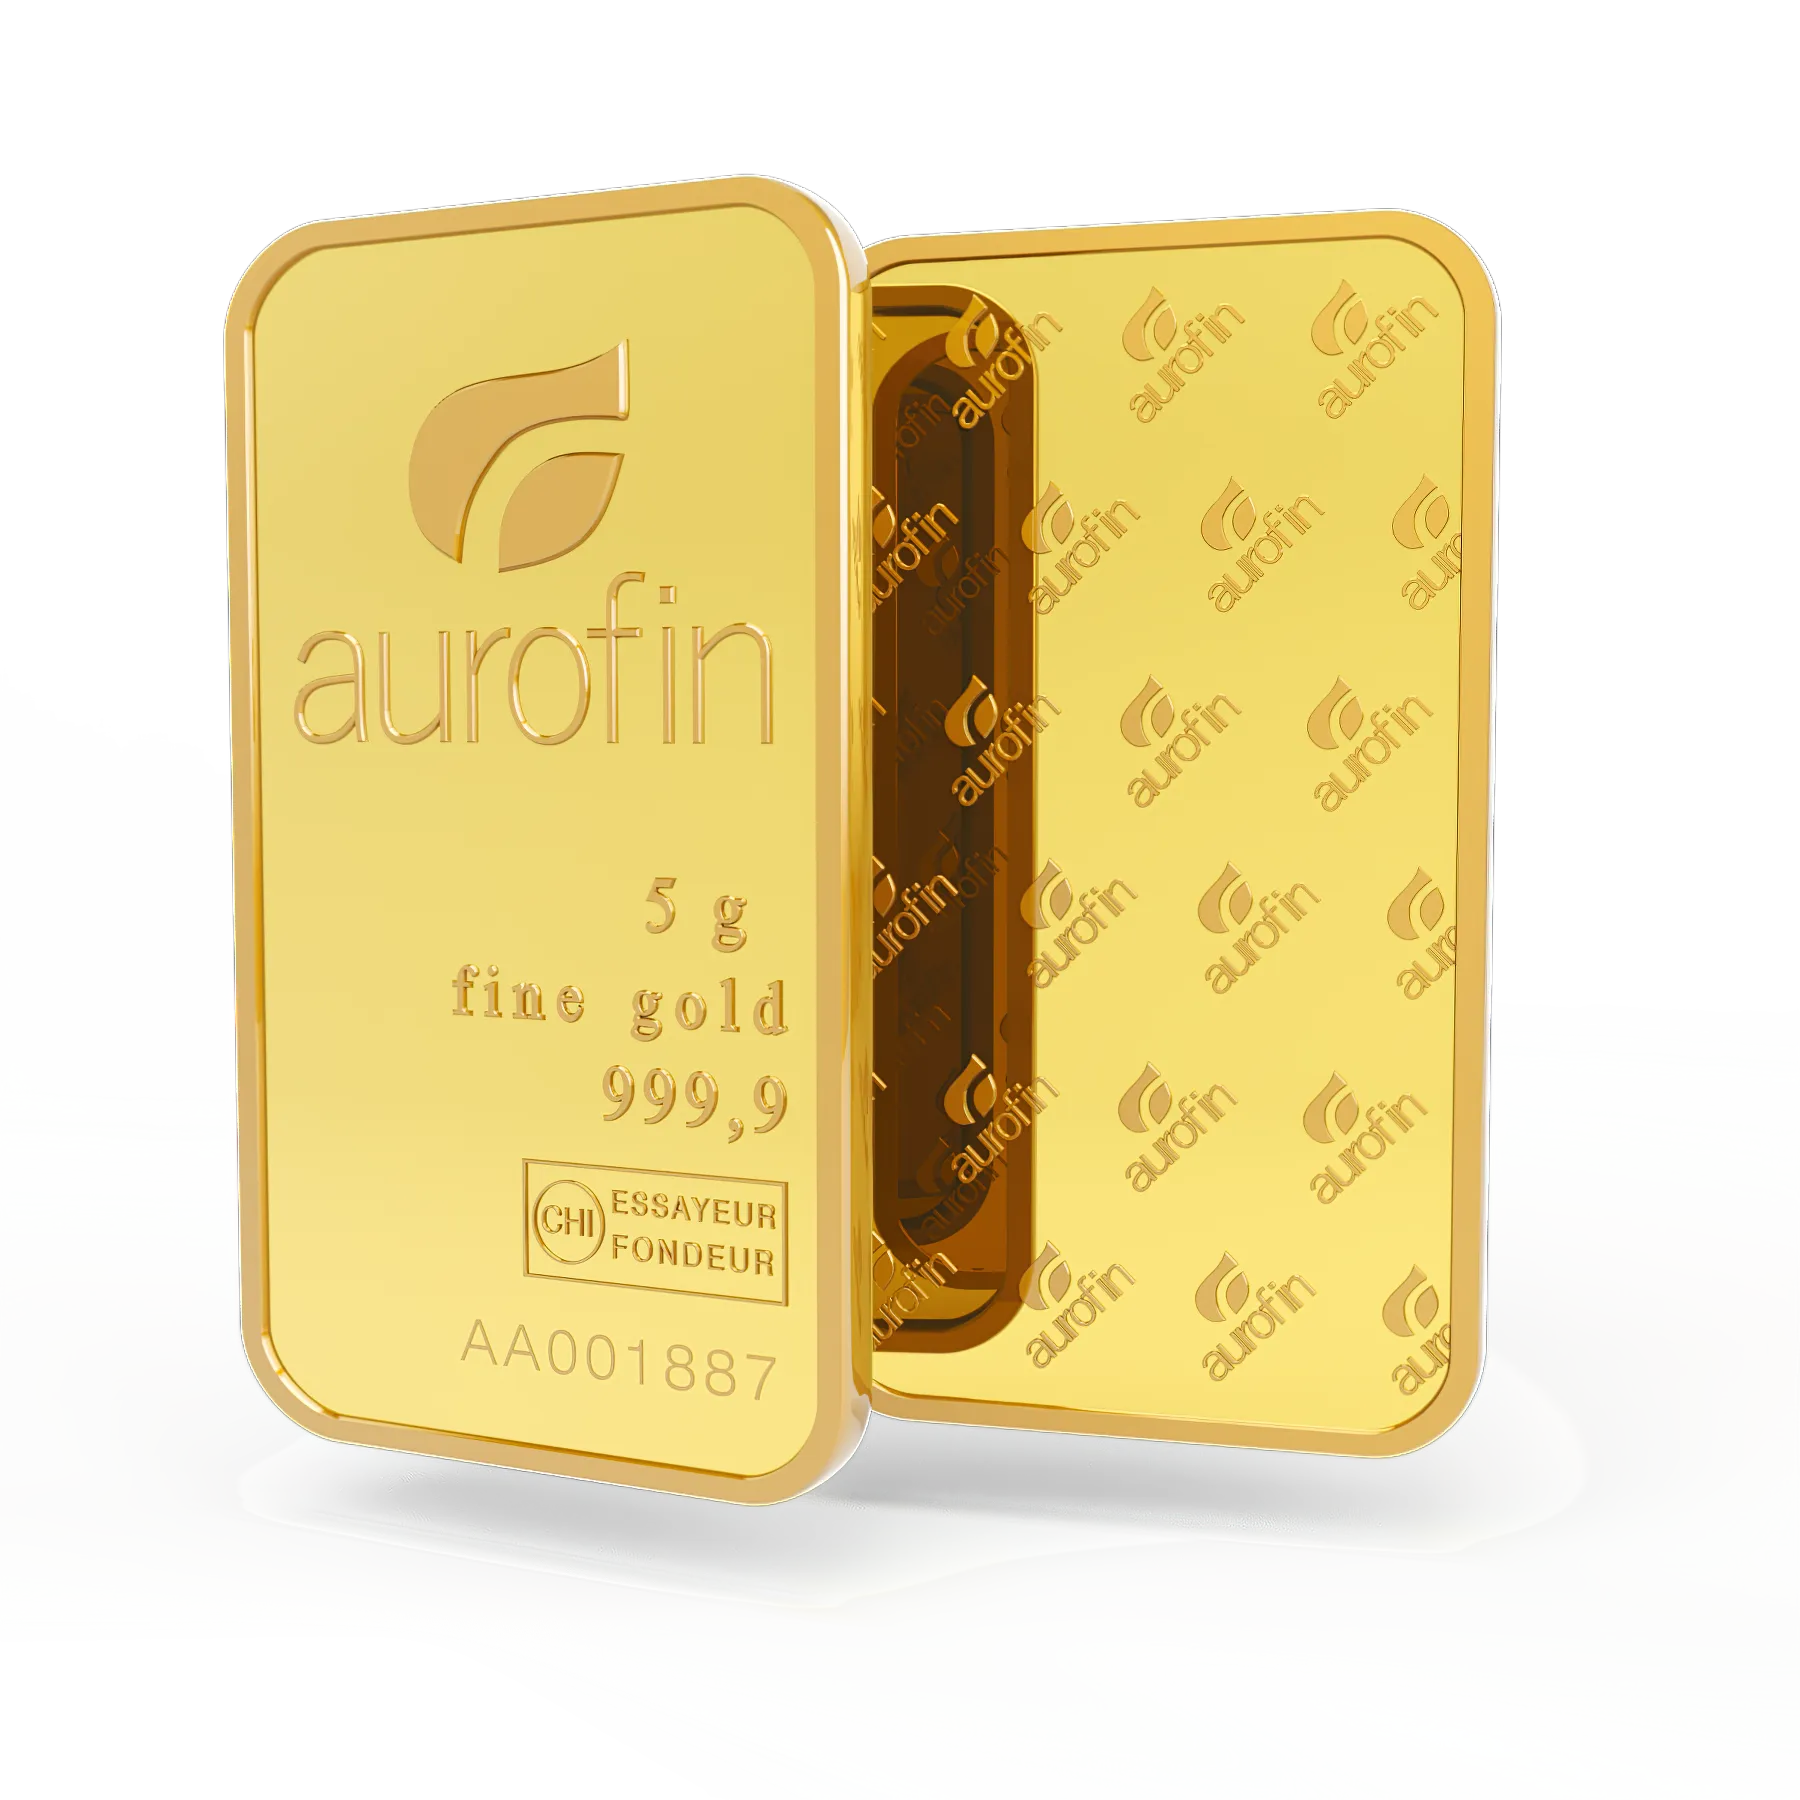 5g gold bar. Switzerland. Fine Gold. 999.9